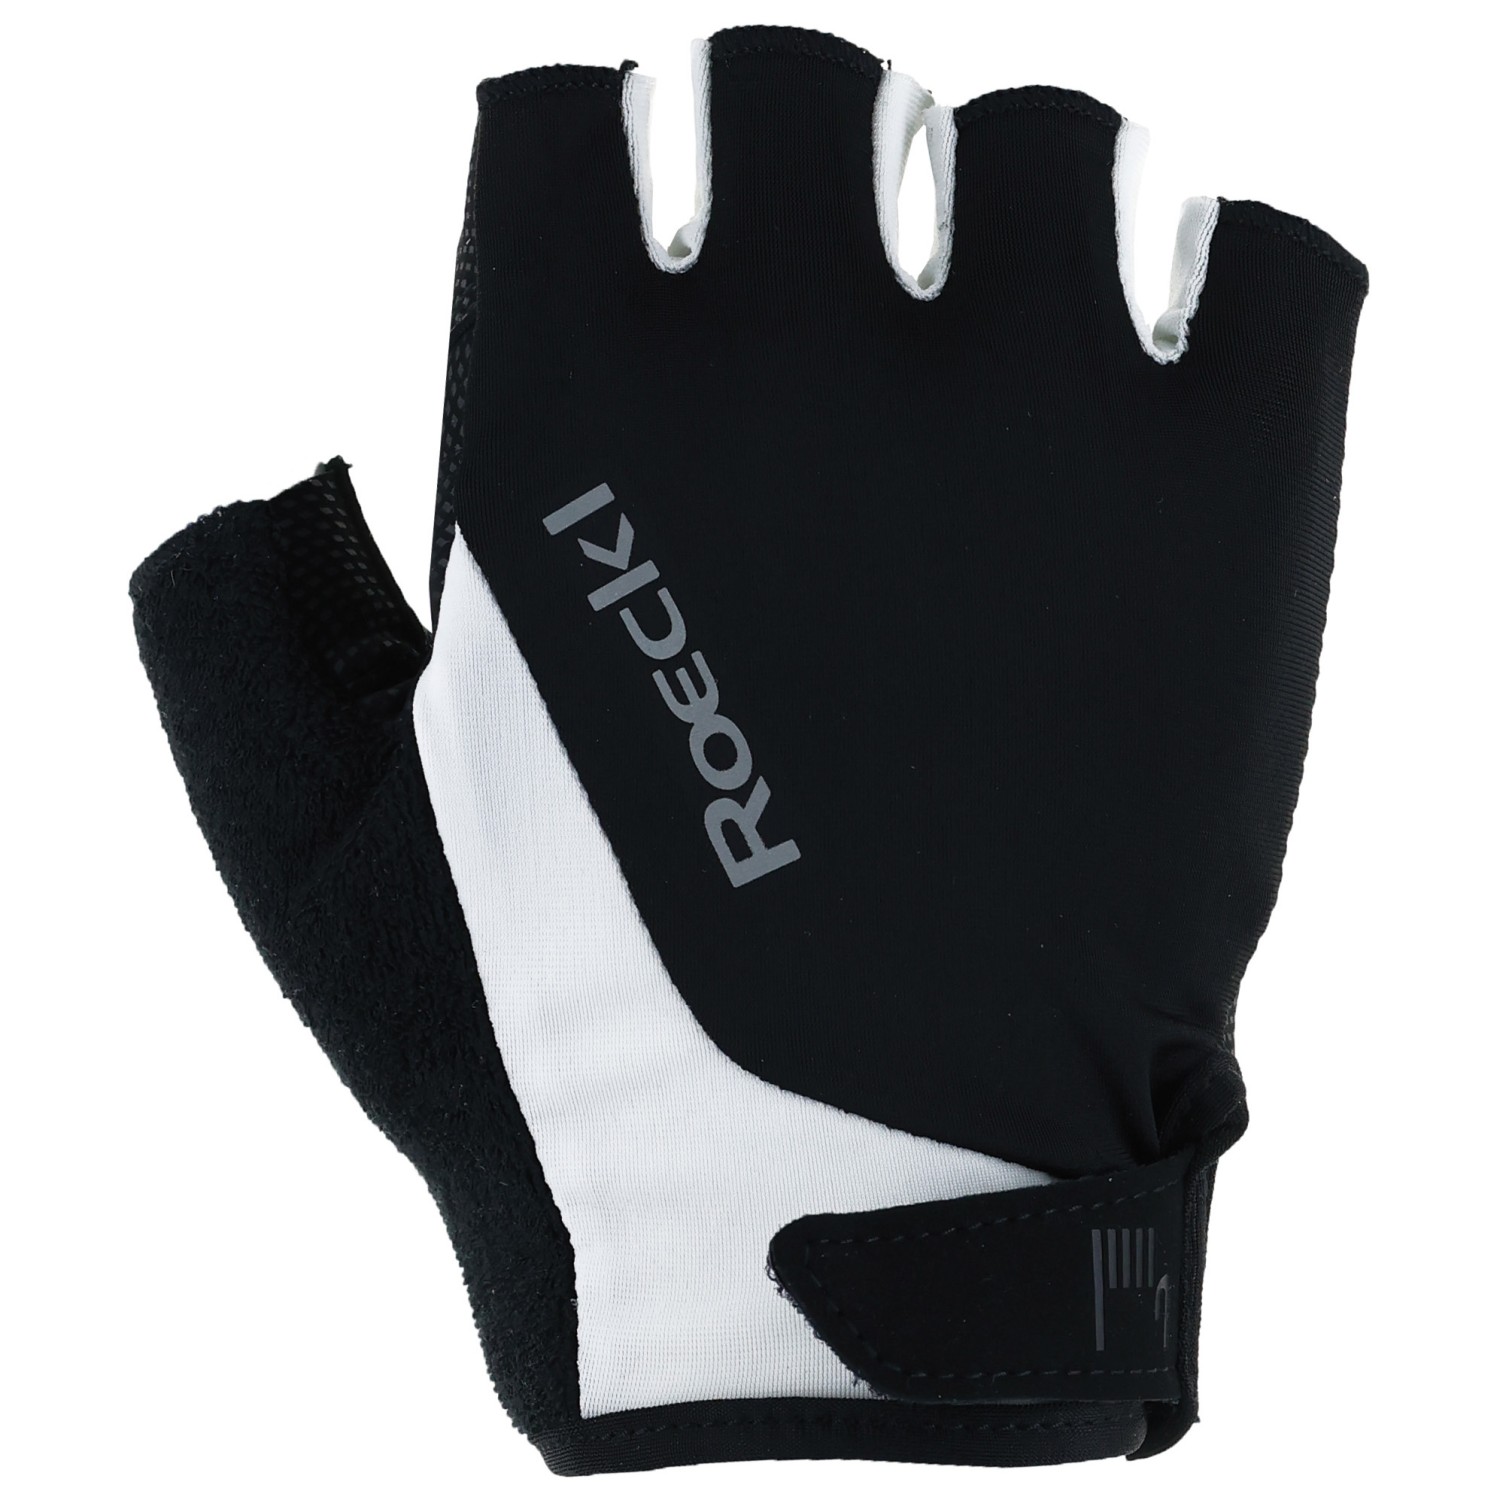 Перчатки Roeckl Sports Basel 2, цвет Black/White